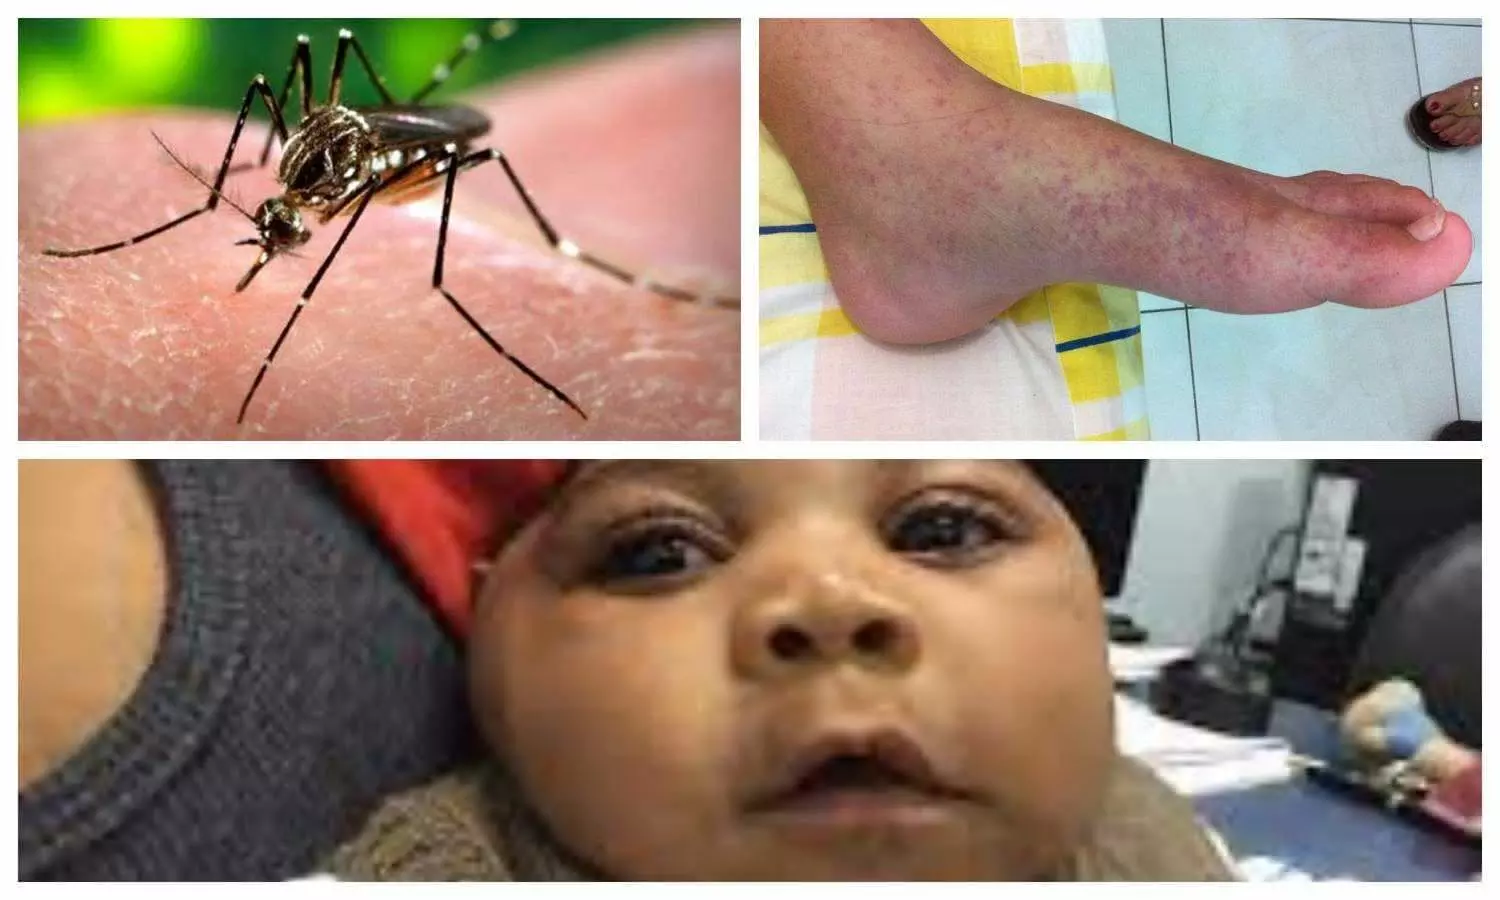 Zika virus, dengue and chikungunya